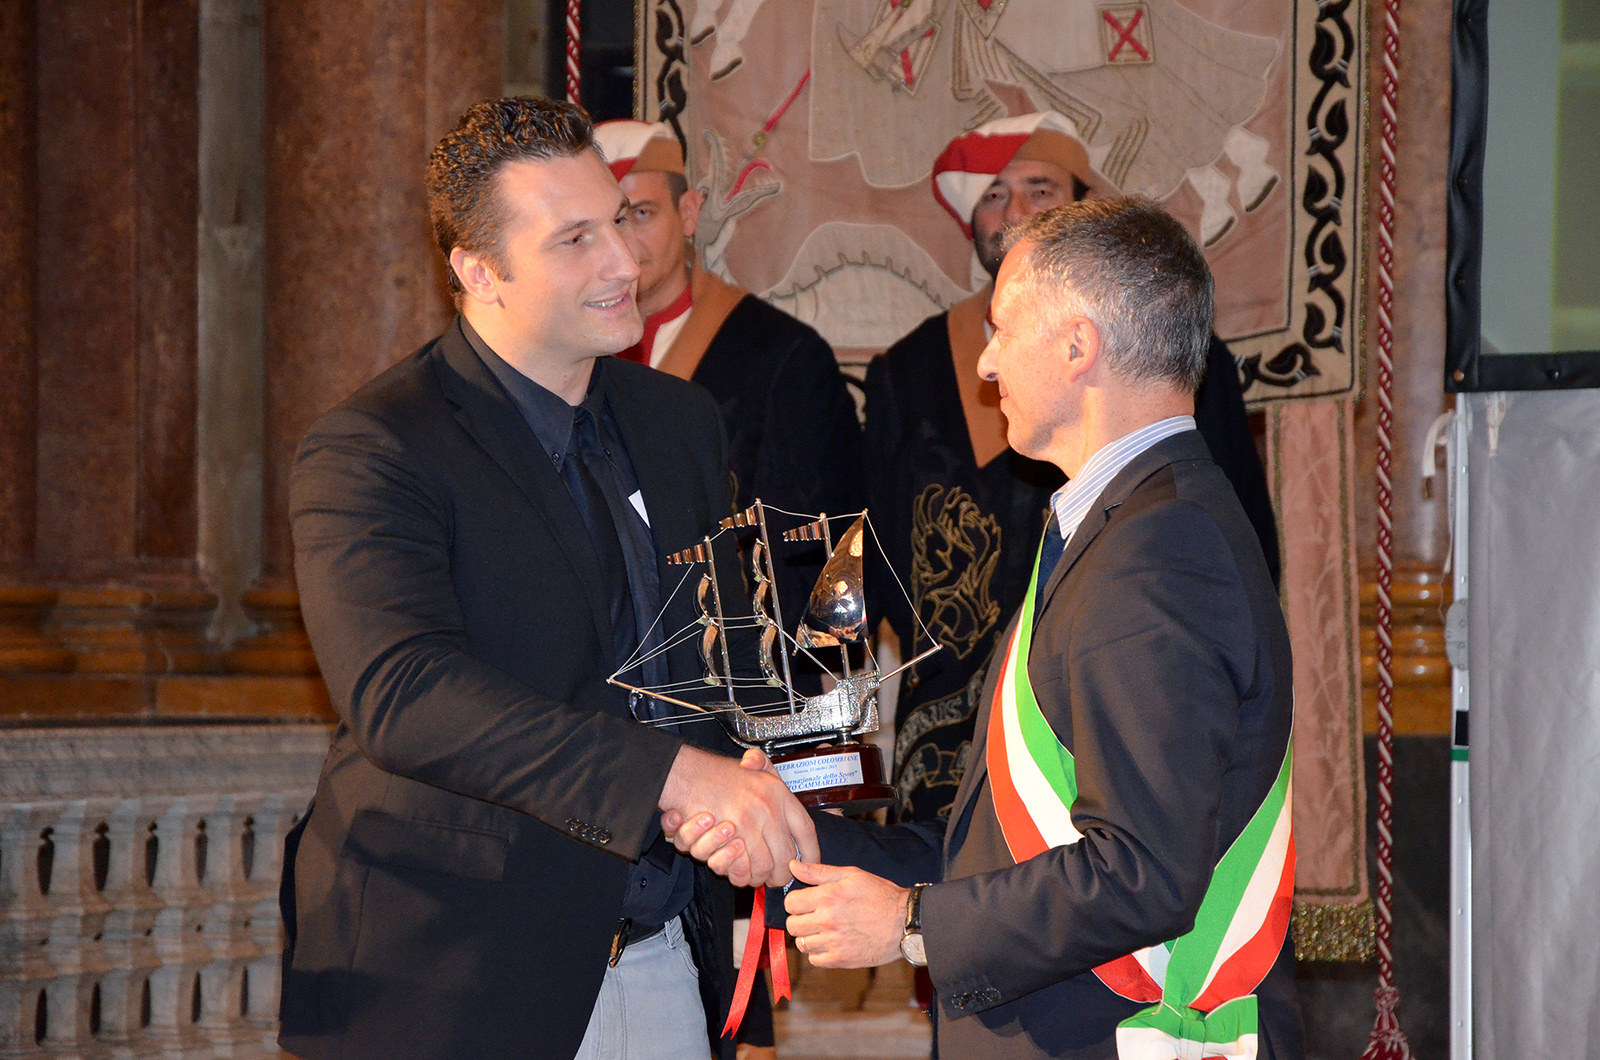 Celebrazioni Colombiane A Genova consegnato il Premio Internazionale dello Sport 2015 a Roby Cammarelle